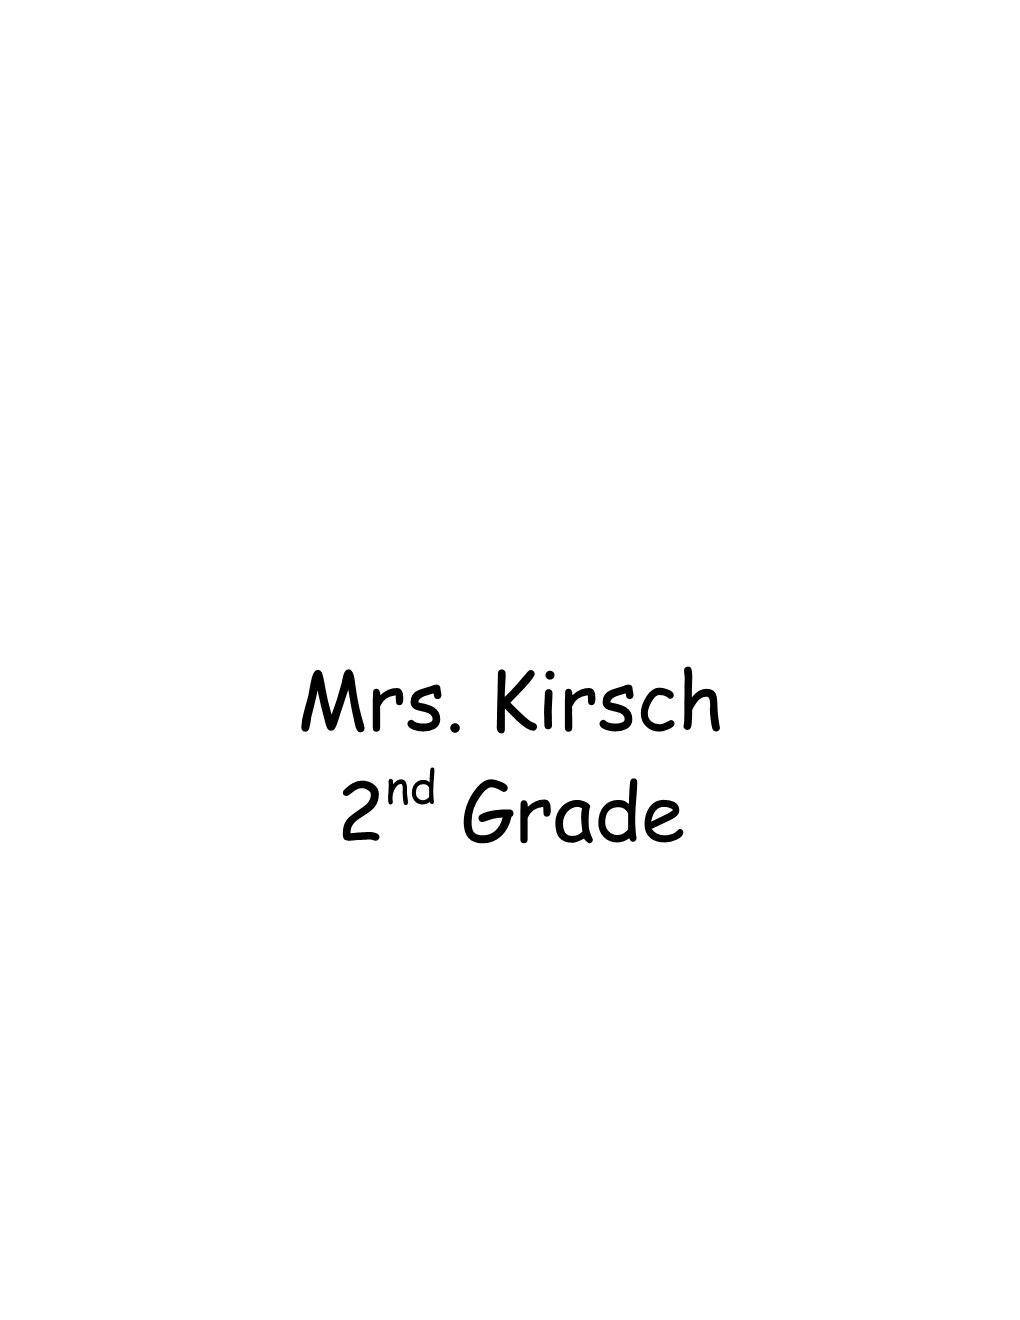 Mrs. Kirsch S Class Rules